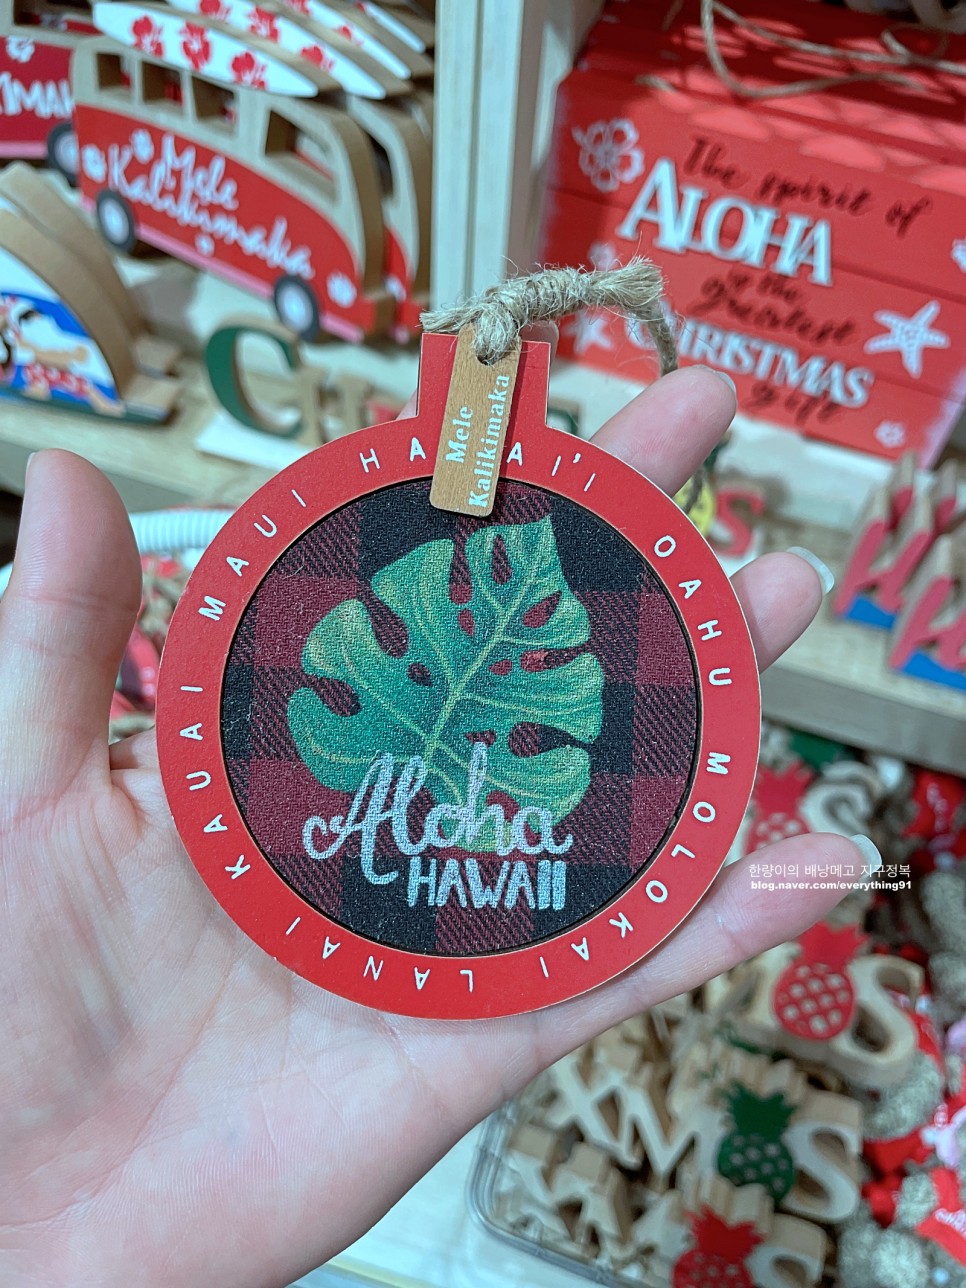 하와이 쇼핑 기념품 리스트 - 슈퍼마켓 아울렛 쇼핑몰 추천